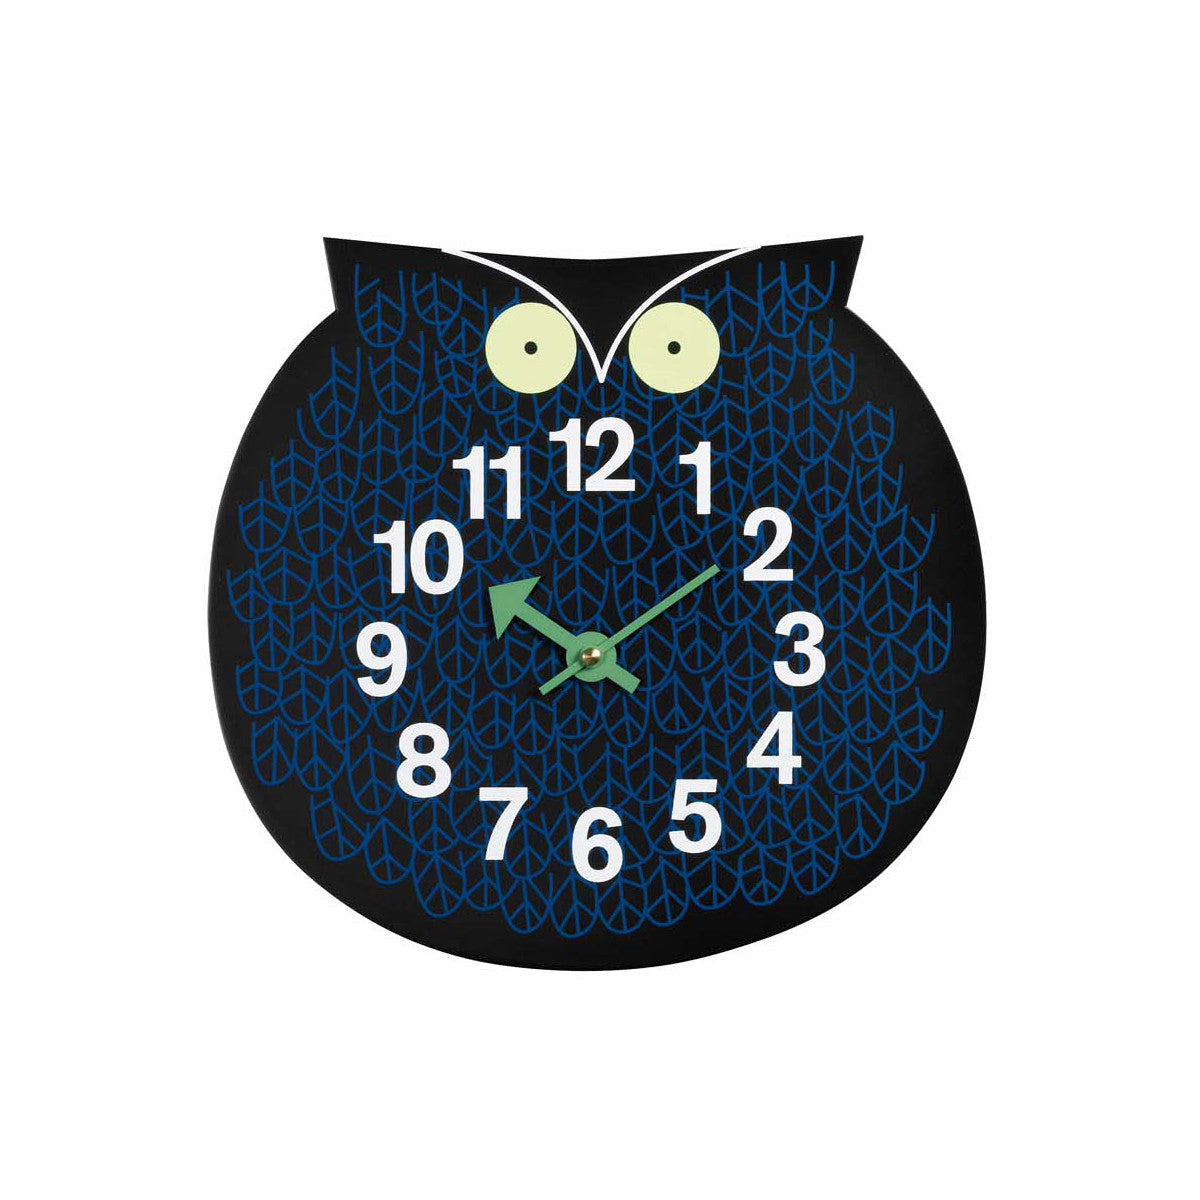 Omar the owl, un ceas de perete special creat pentru copii, produs de Vitra